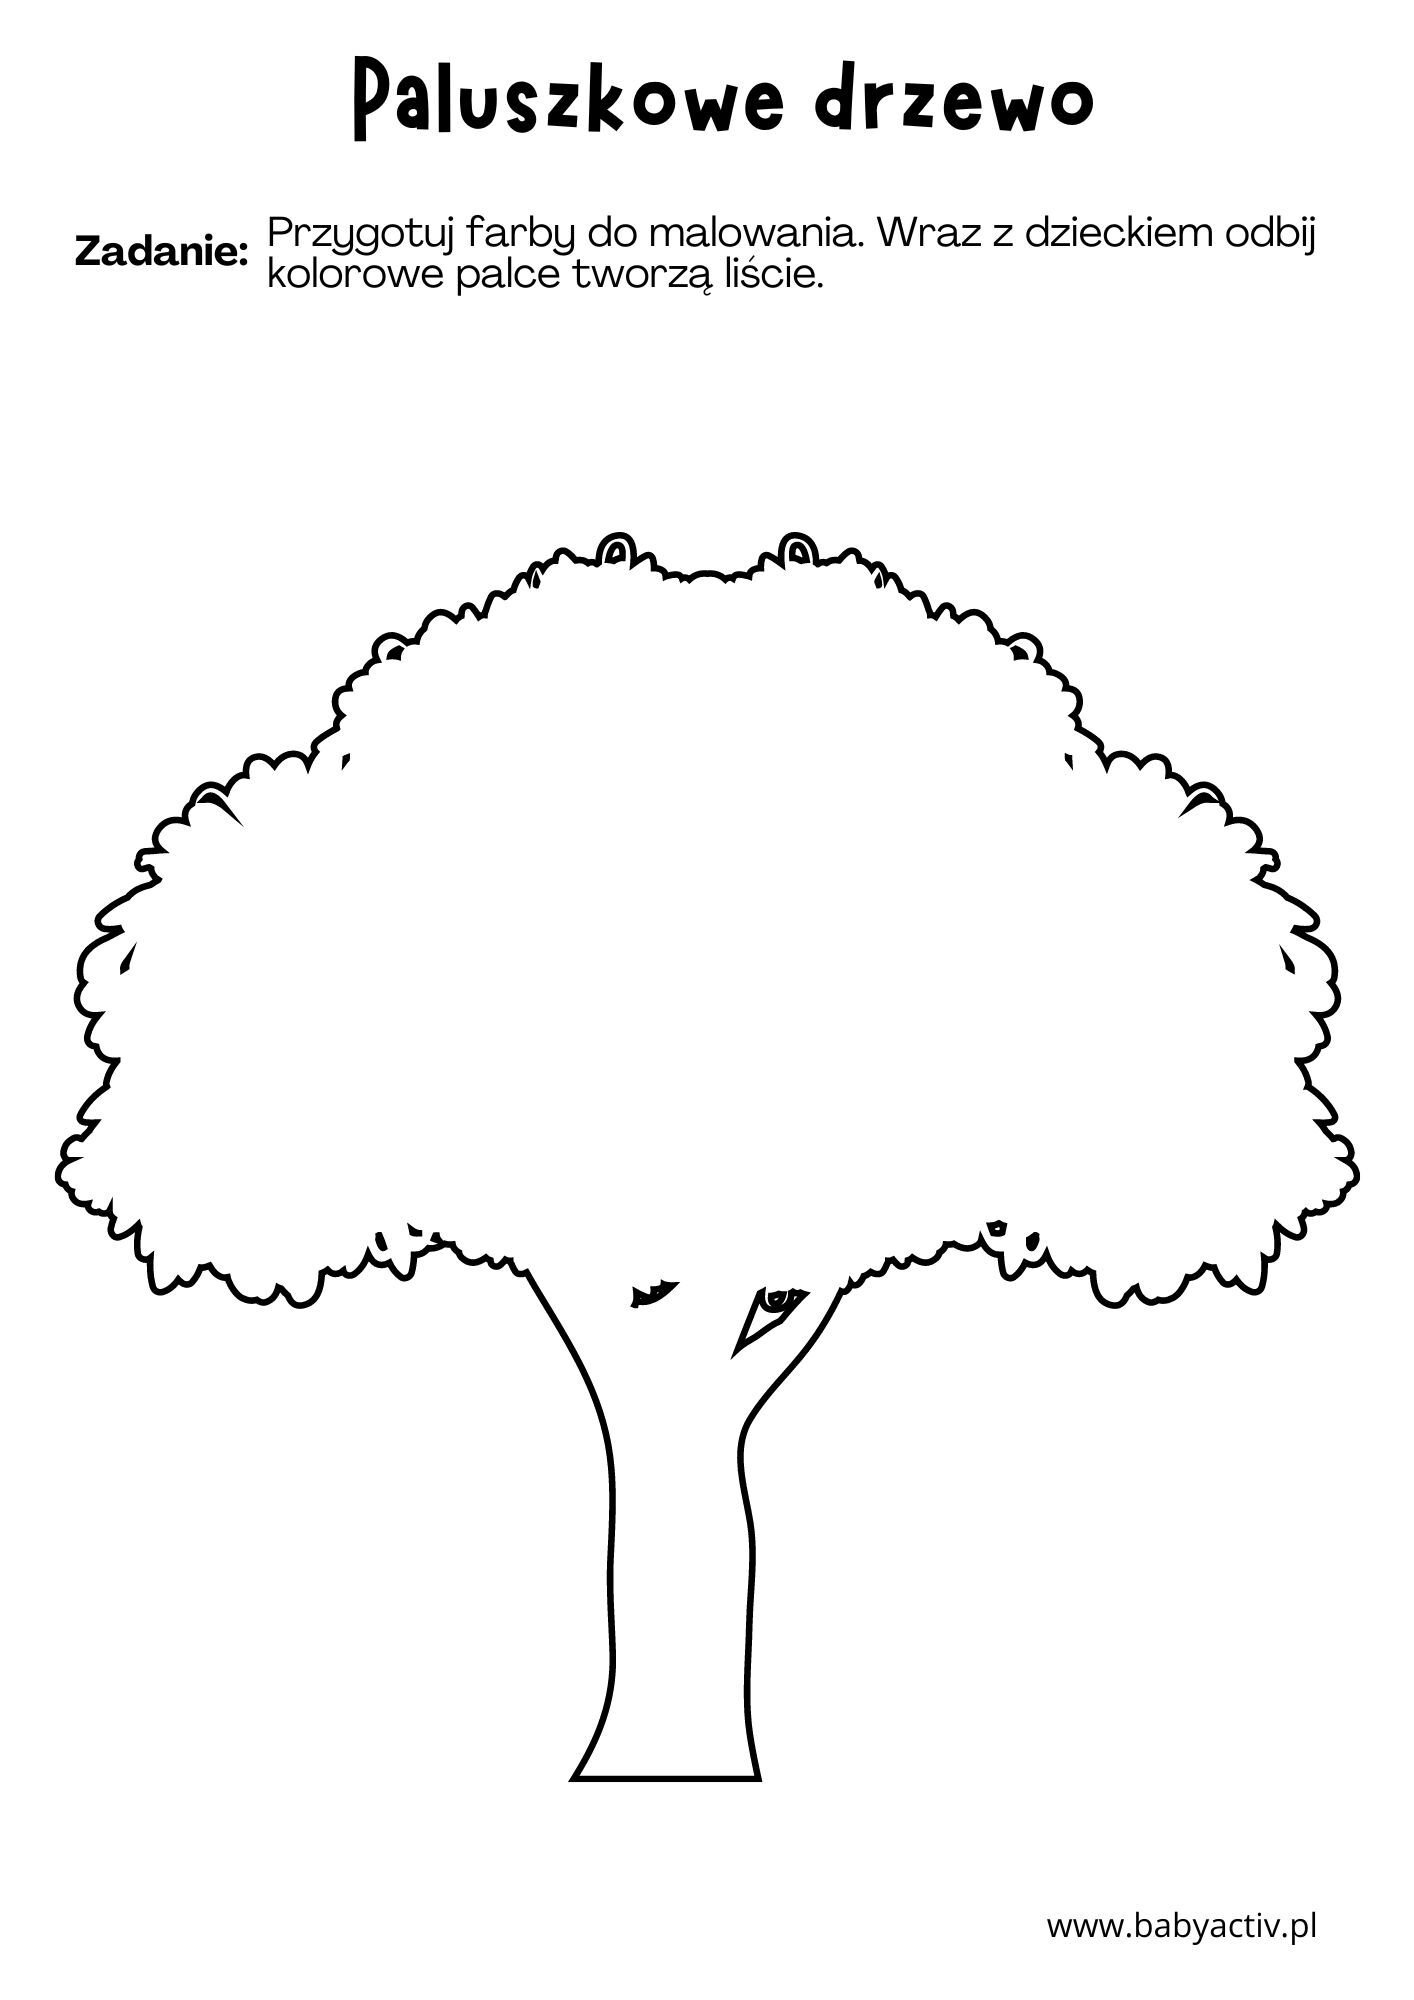 Paluszkowe drzewo do uzupełnienia